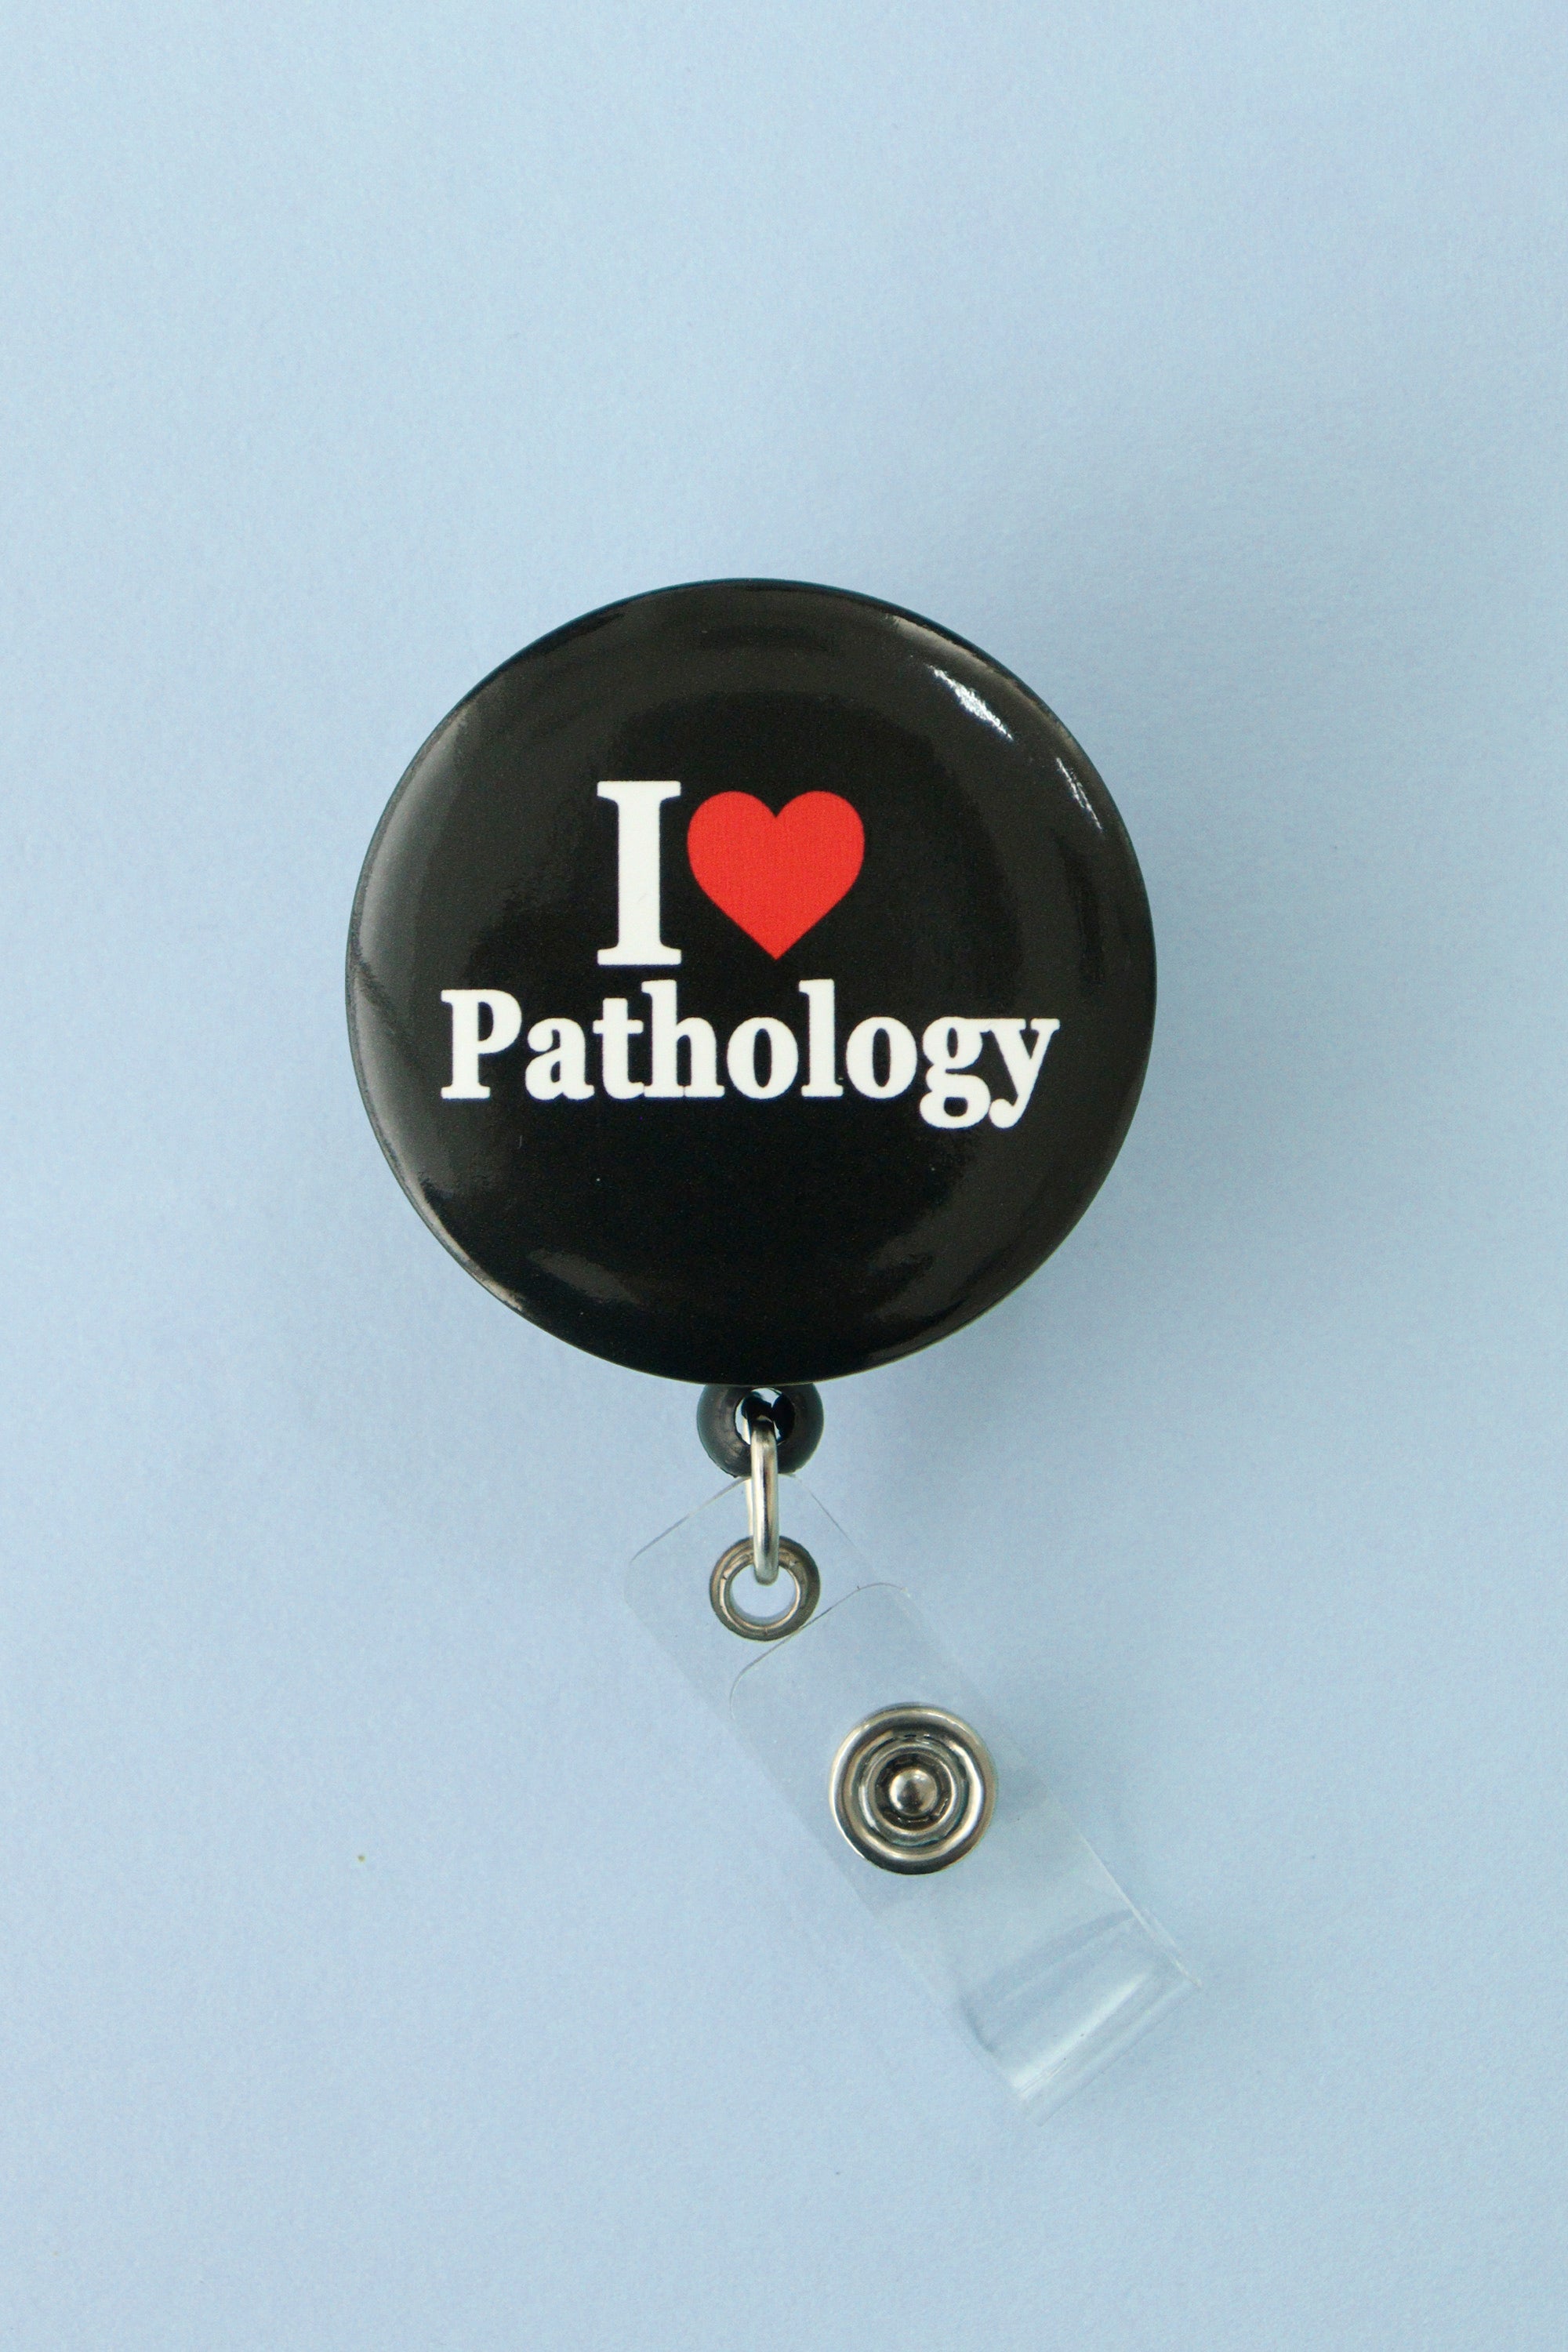 products-pathology1-383682-jpg